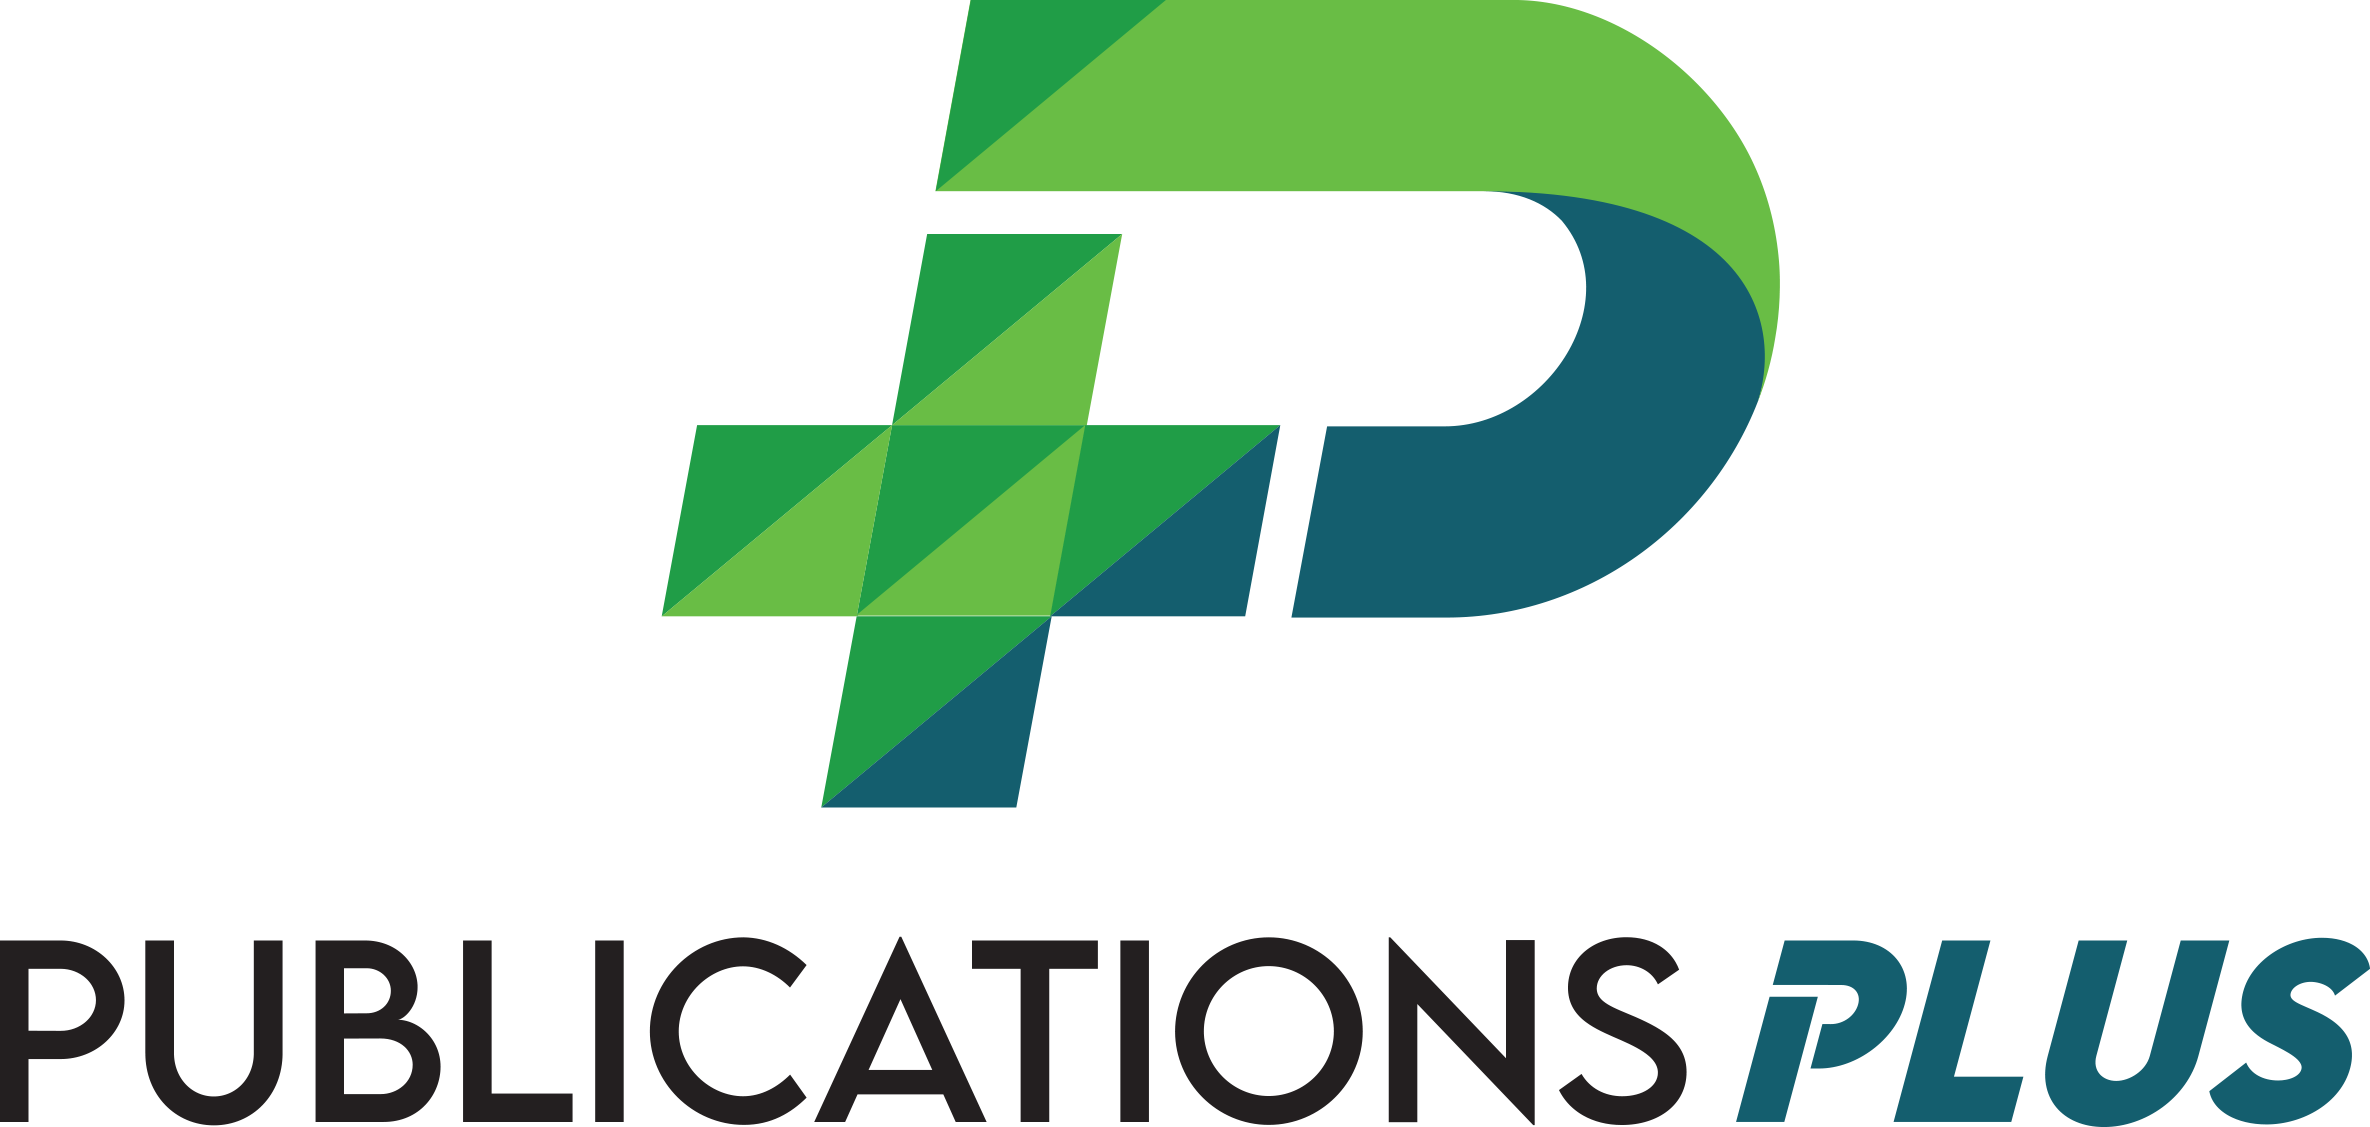 Publications Plus, Inc.'s Logo